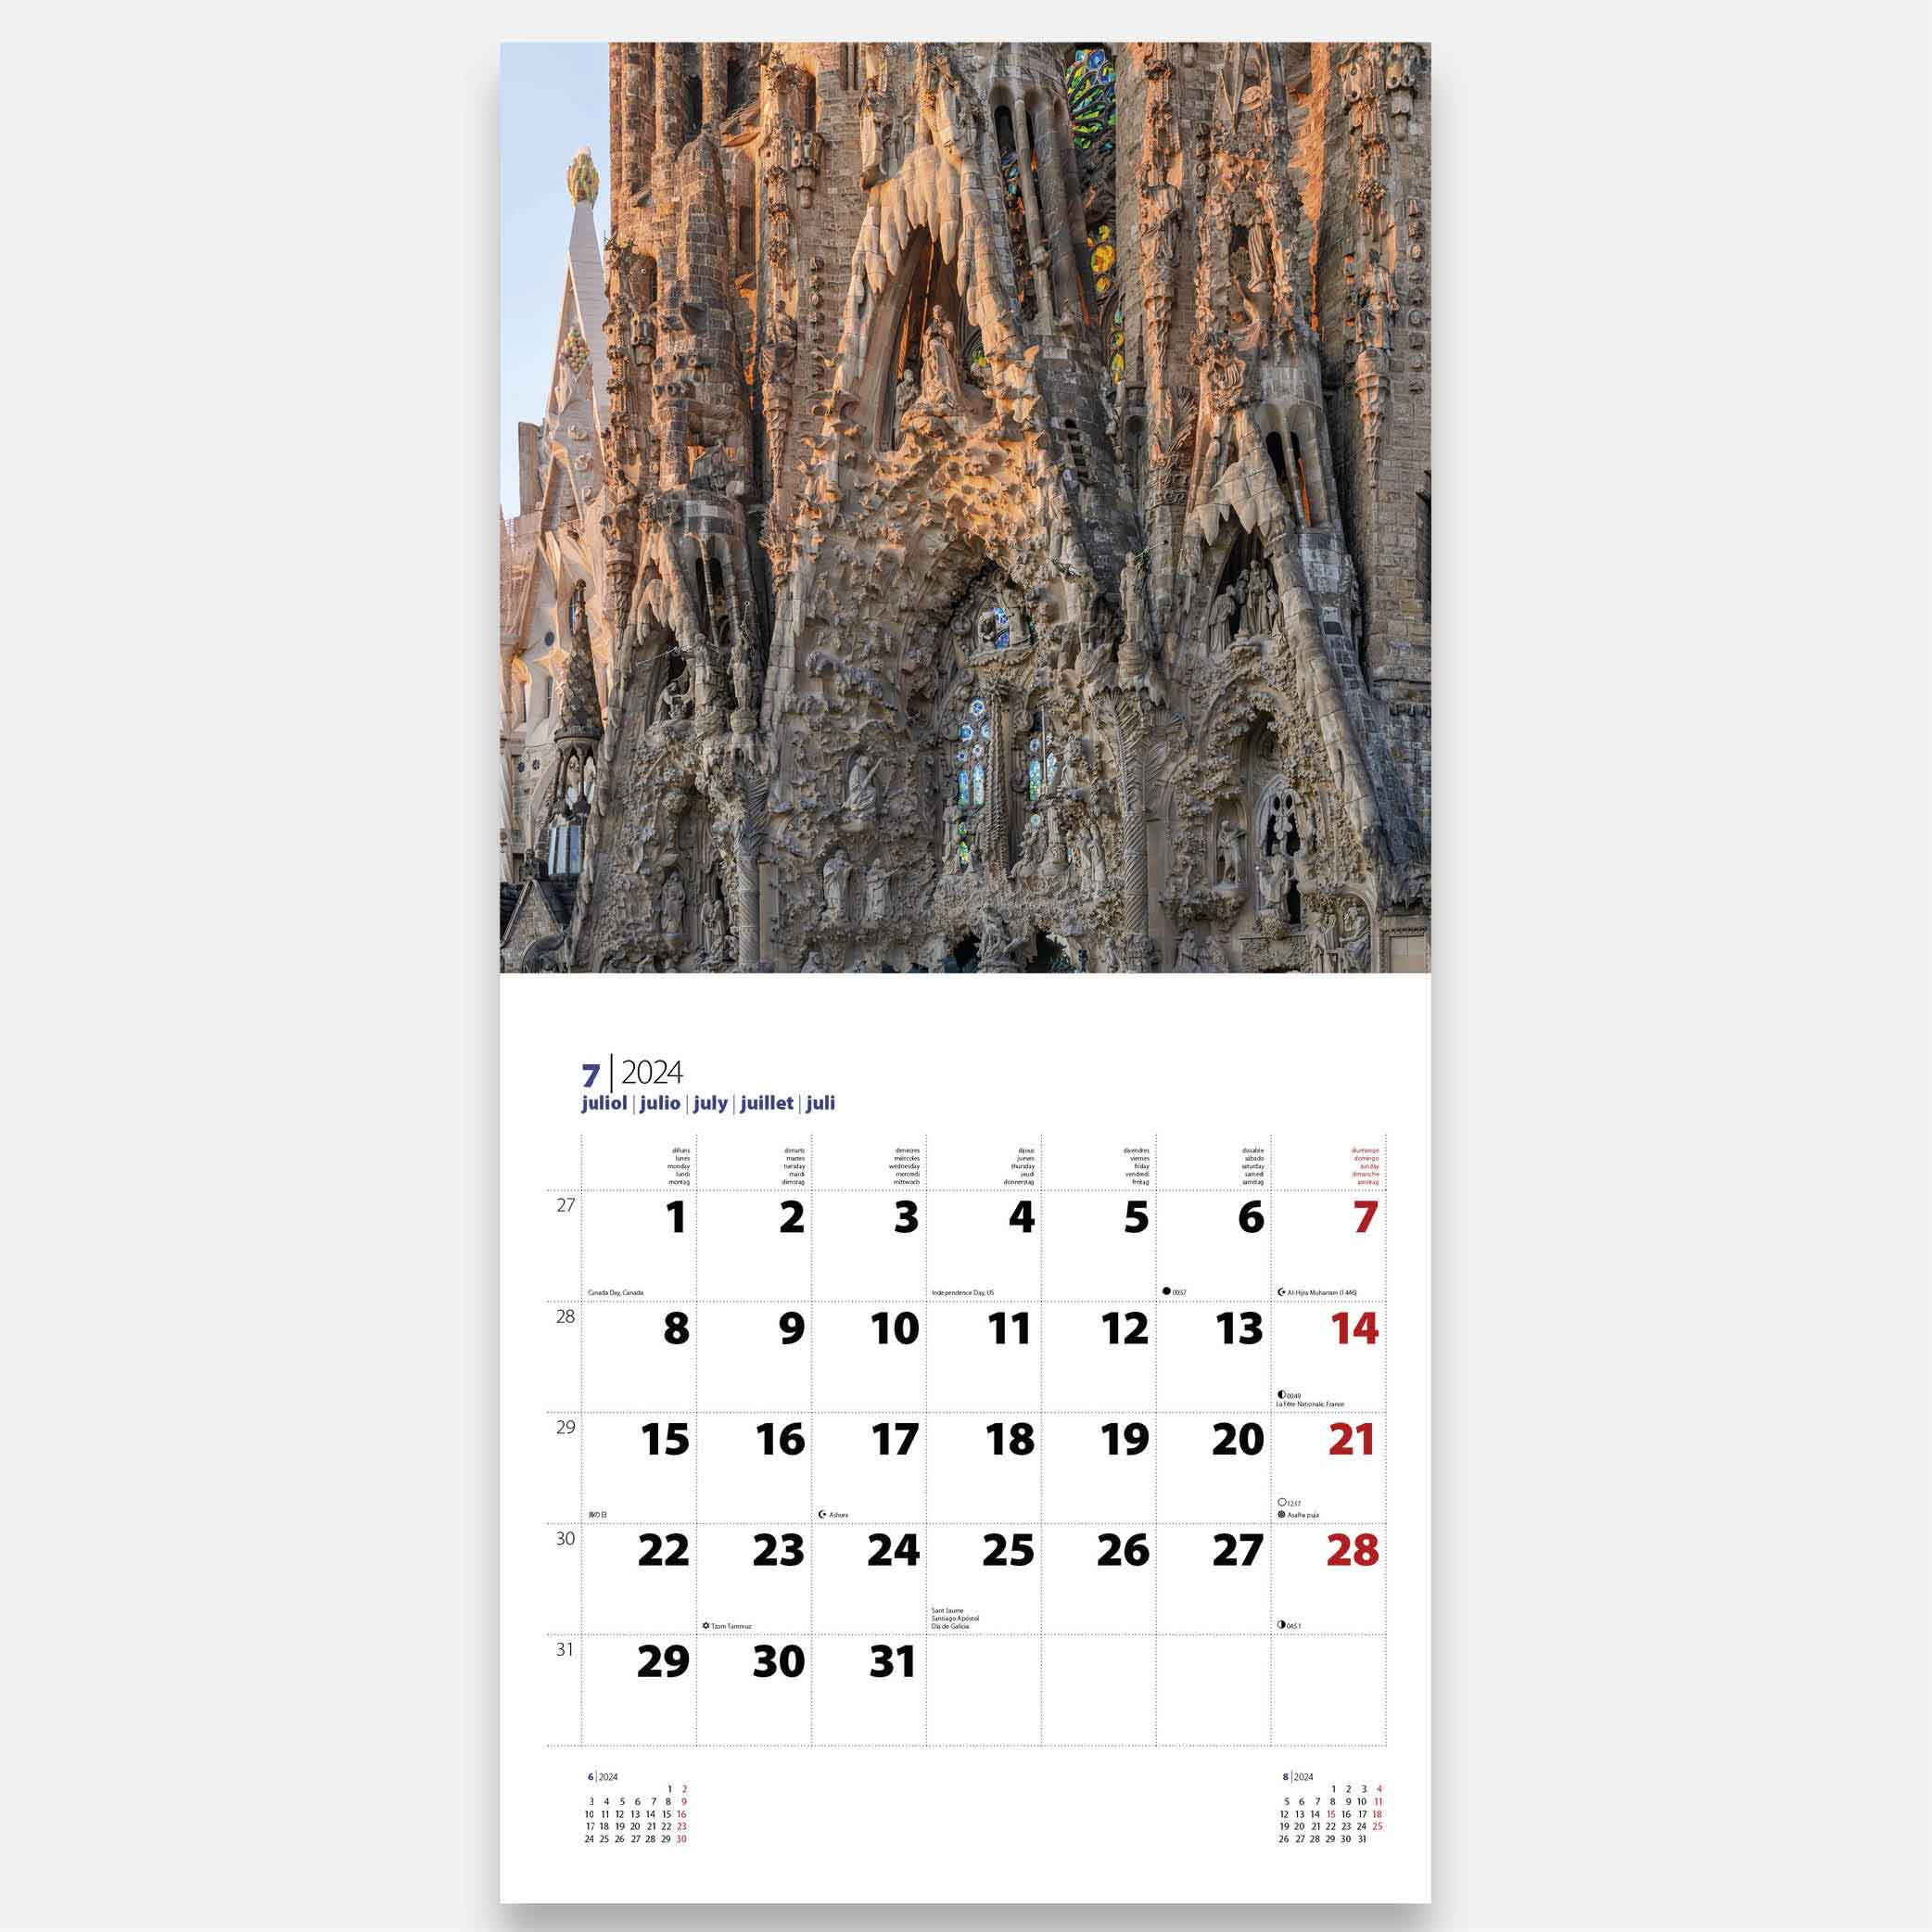 Calendario 2024 Basílica de la Sagrada Família 24sfg23 calendario pared 2024 gaudi sagrada familia